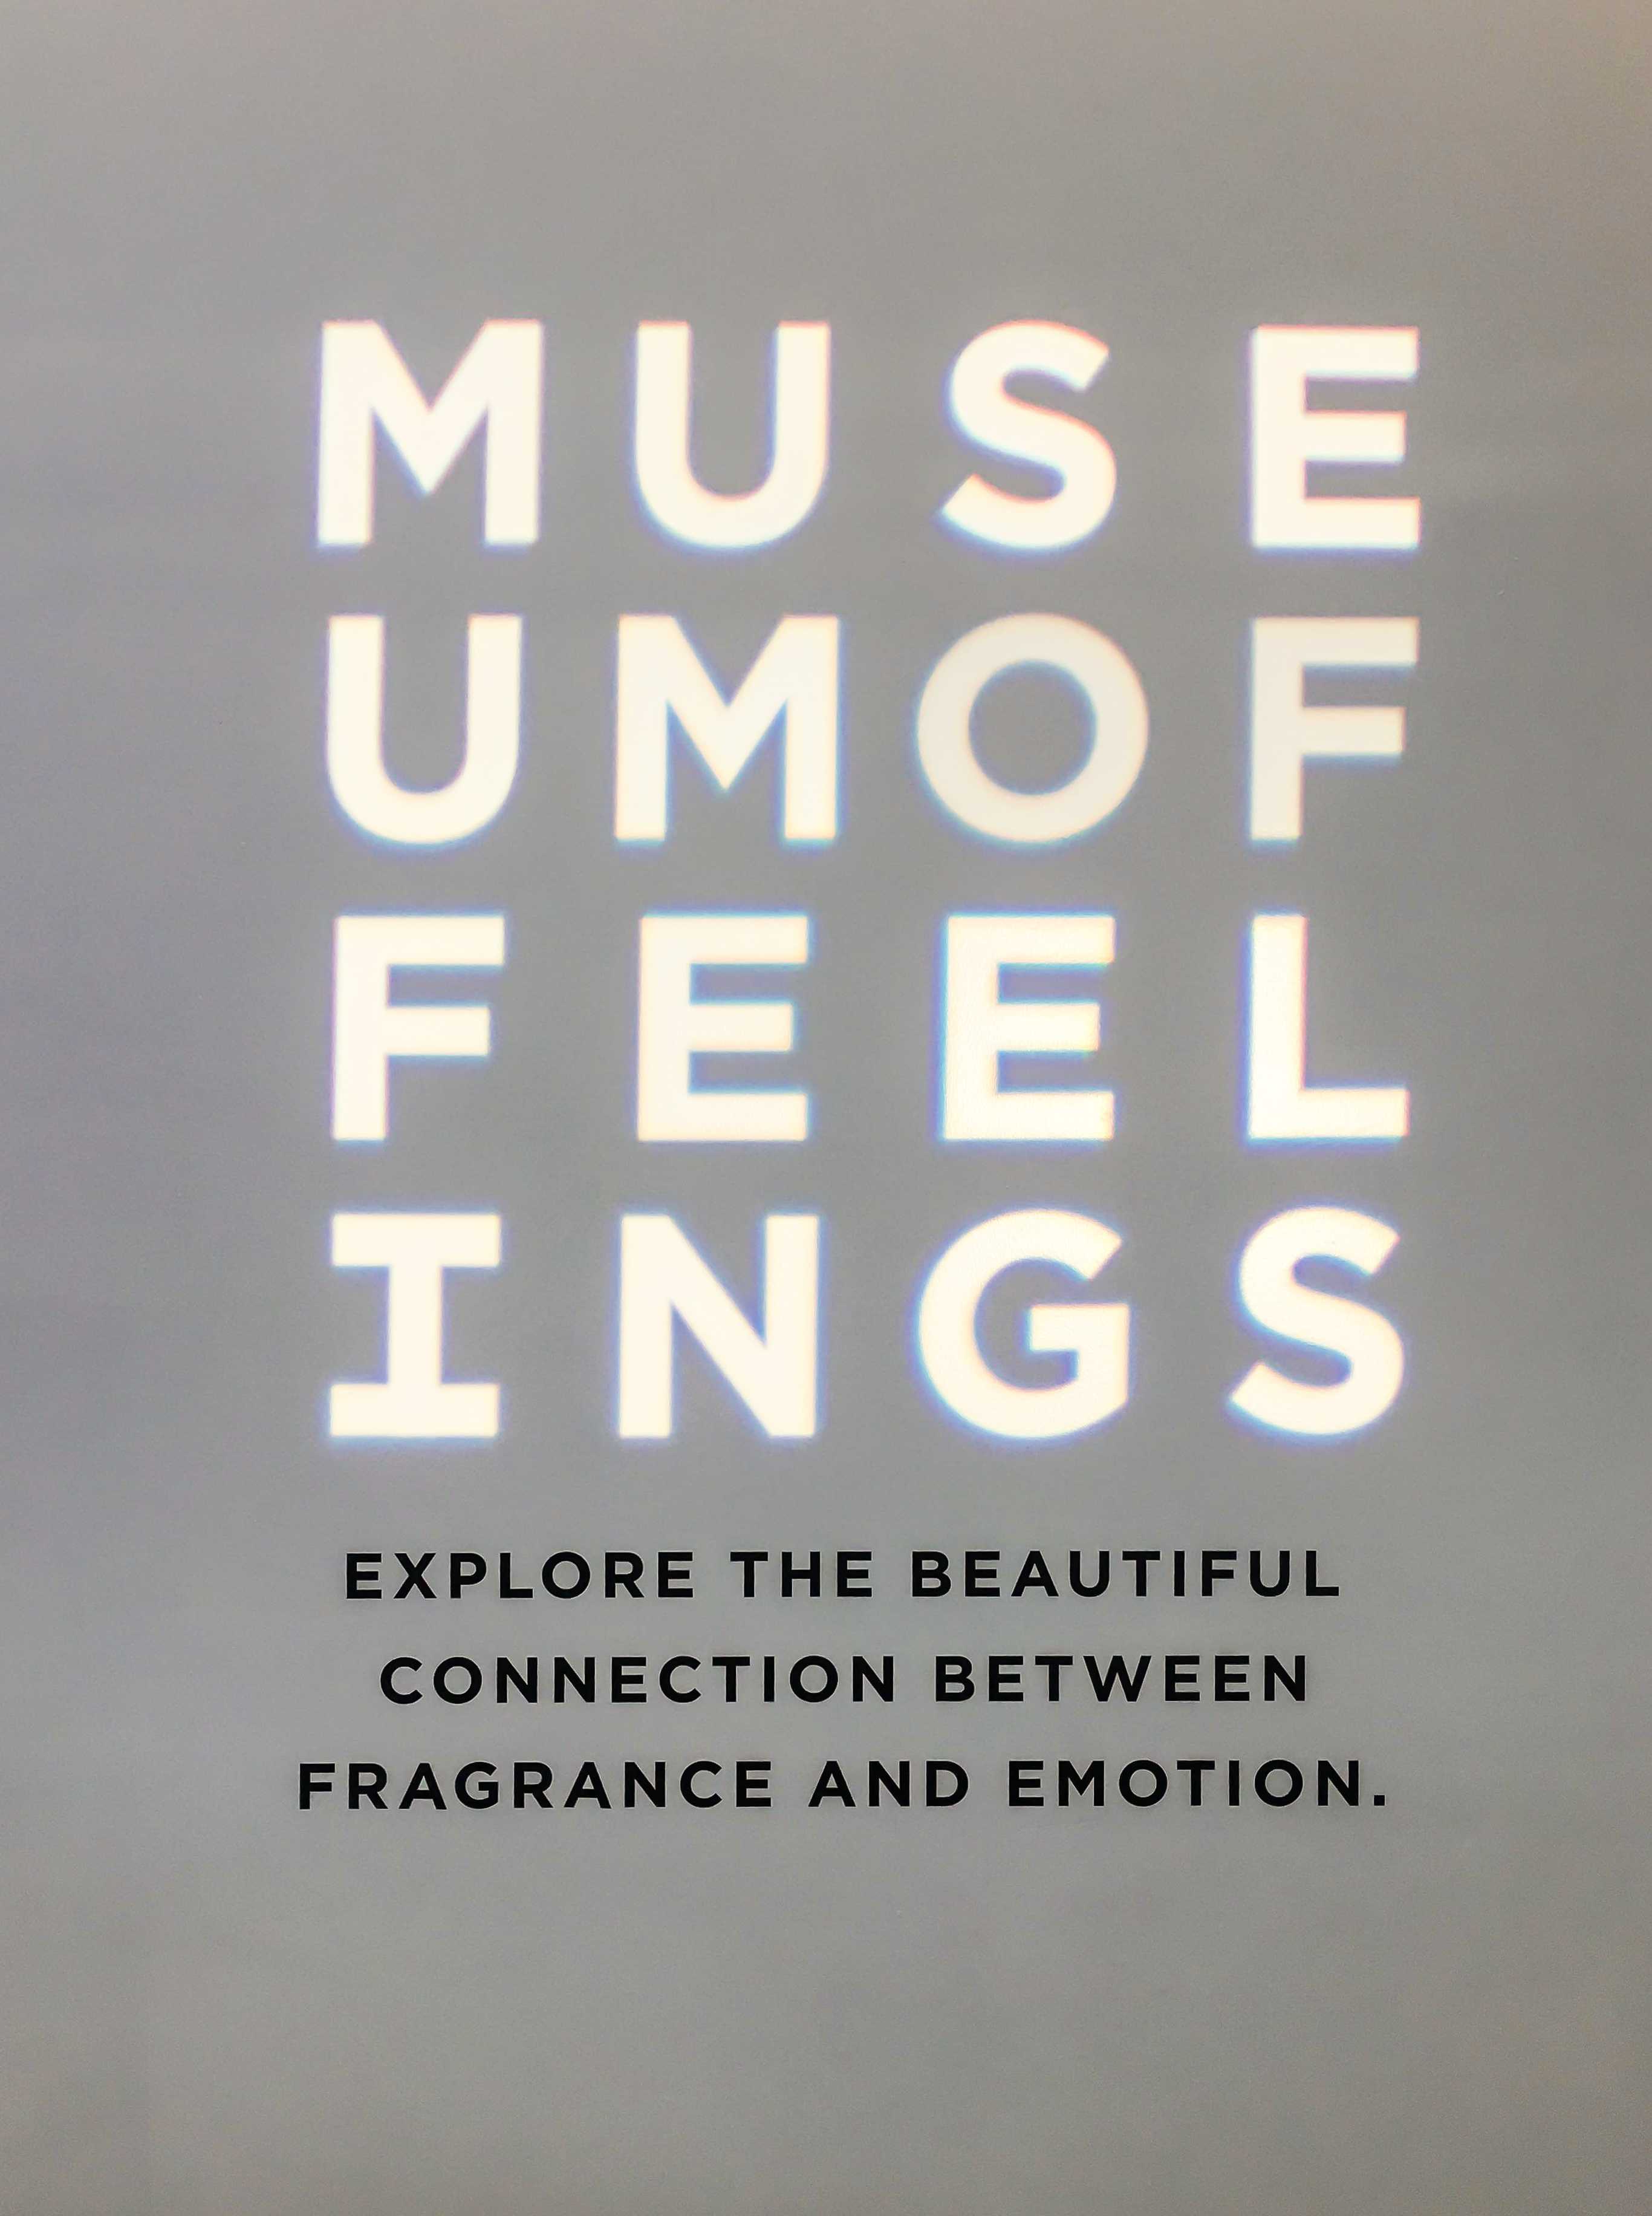 Museum+of+Feelings+makes+you+feel+things